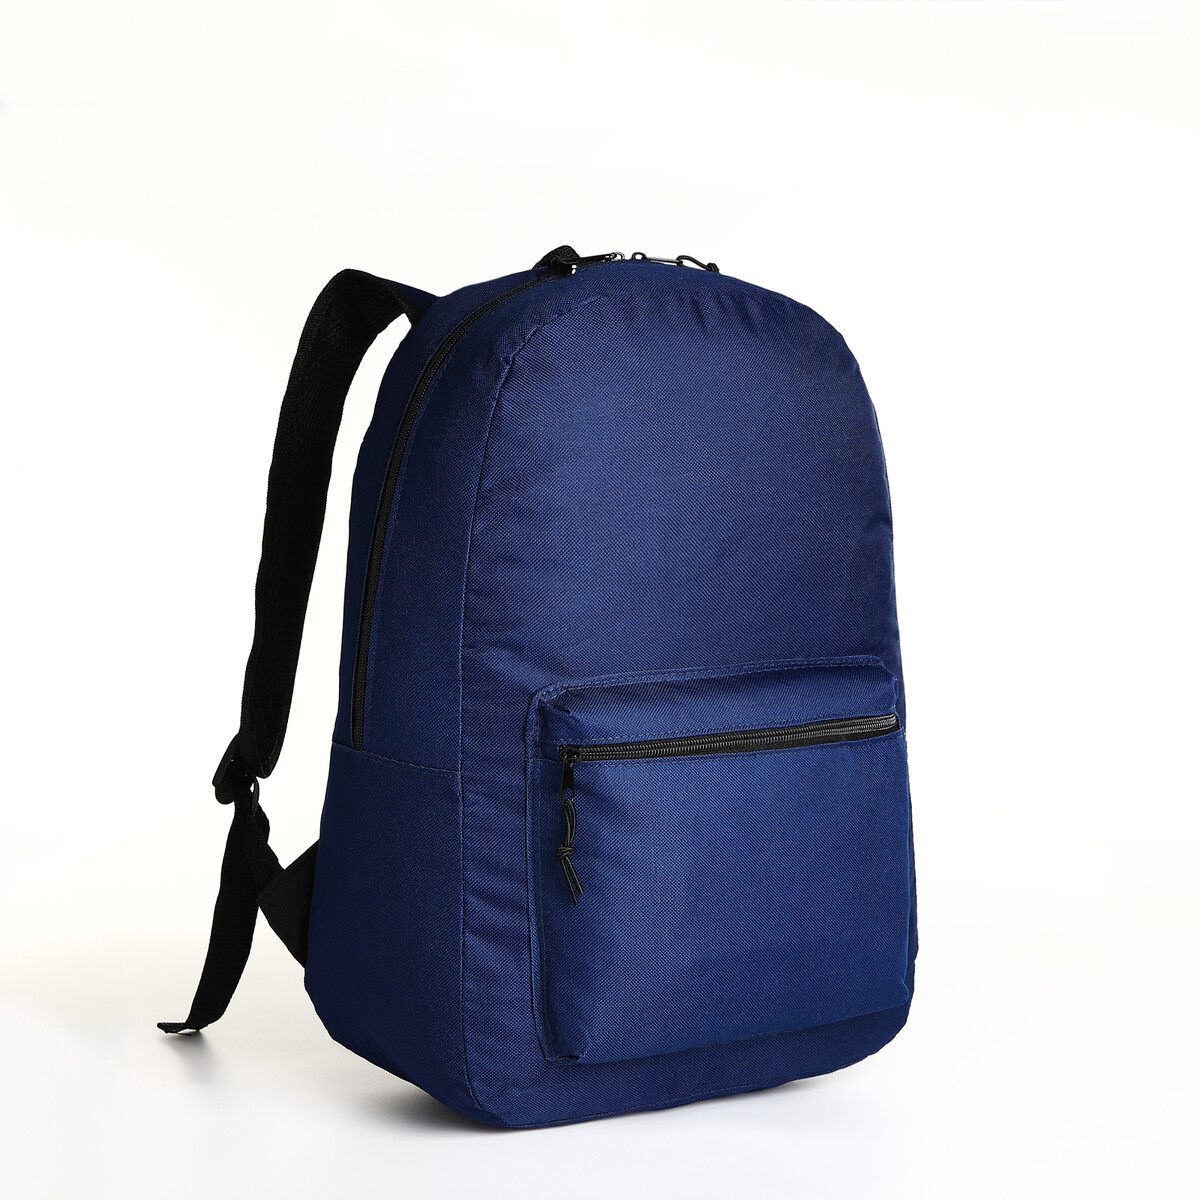 Рюкзак молодежный на молнии, наружный карман, цвет синий рюкзак bruno visconti молодежный синий copyleft арт 12 003 148 02